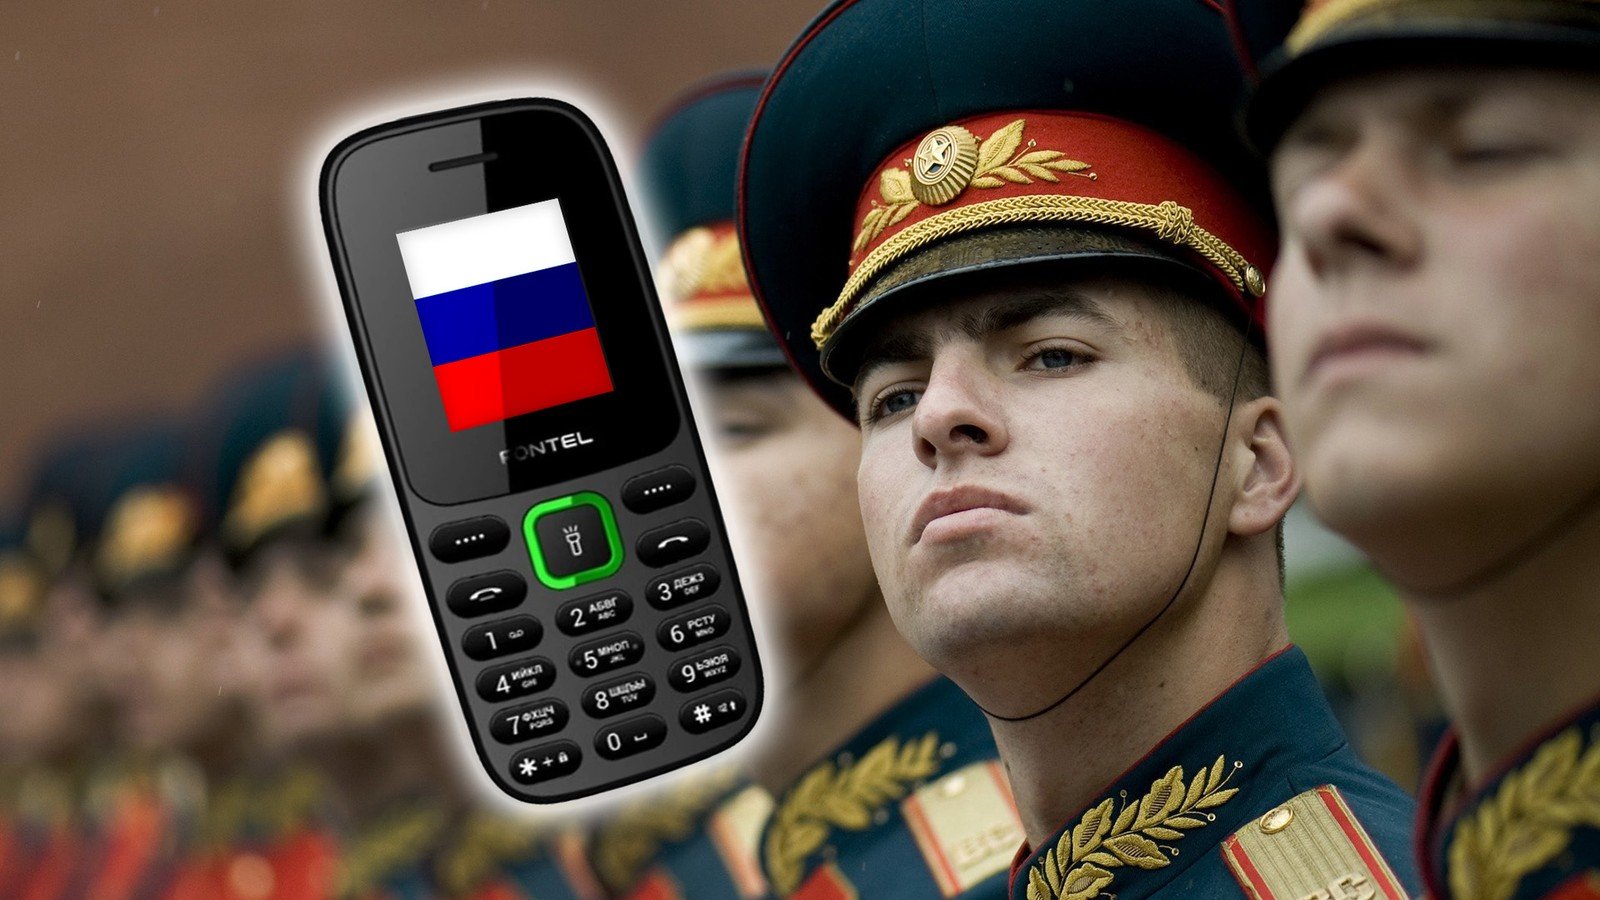 Rosyjski Fontel FP 200 rzuci Twój smartfon na kolana. Oto kwiat radzieckiej myśli technologicznej